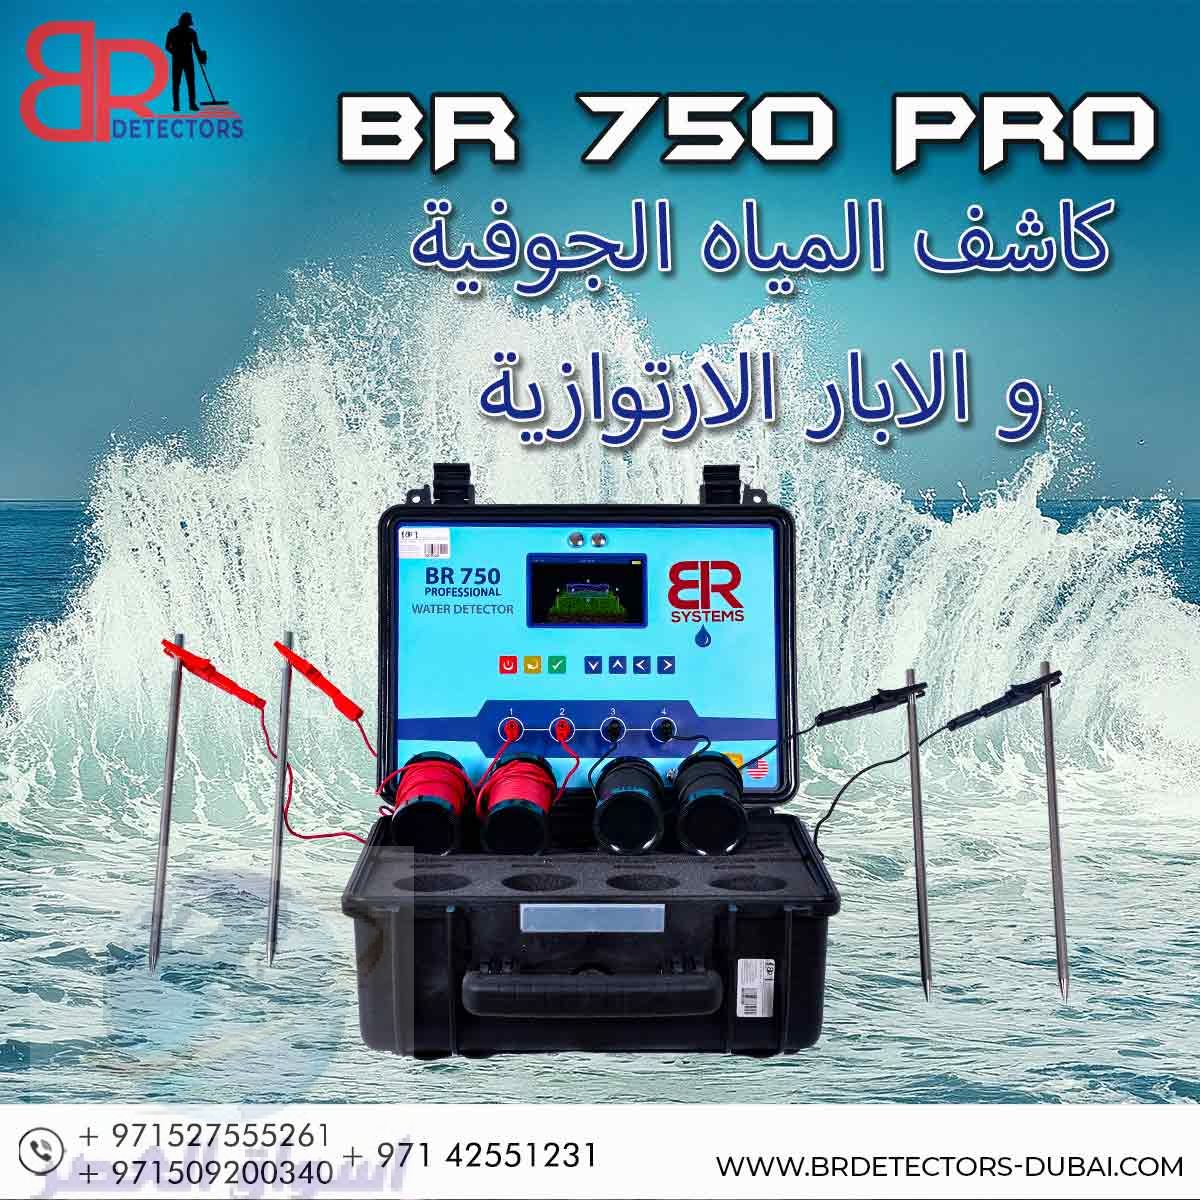 اجهزة كشف المياه الجوفية في الامارات BR 750 PRO